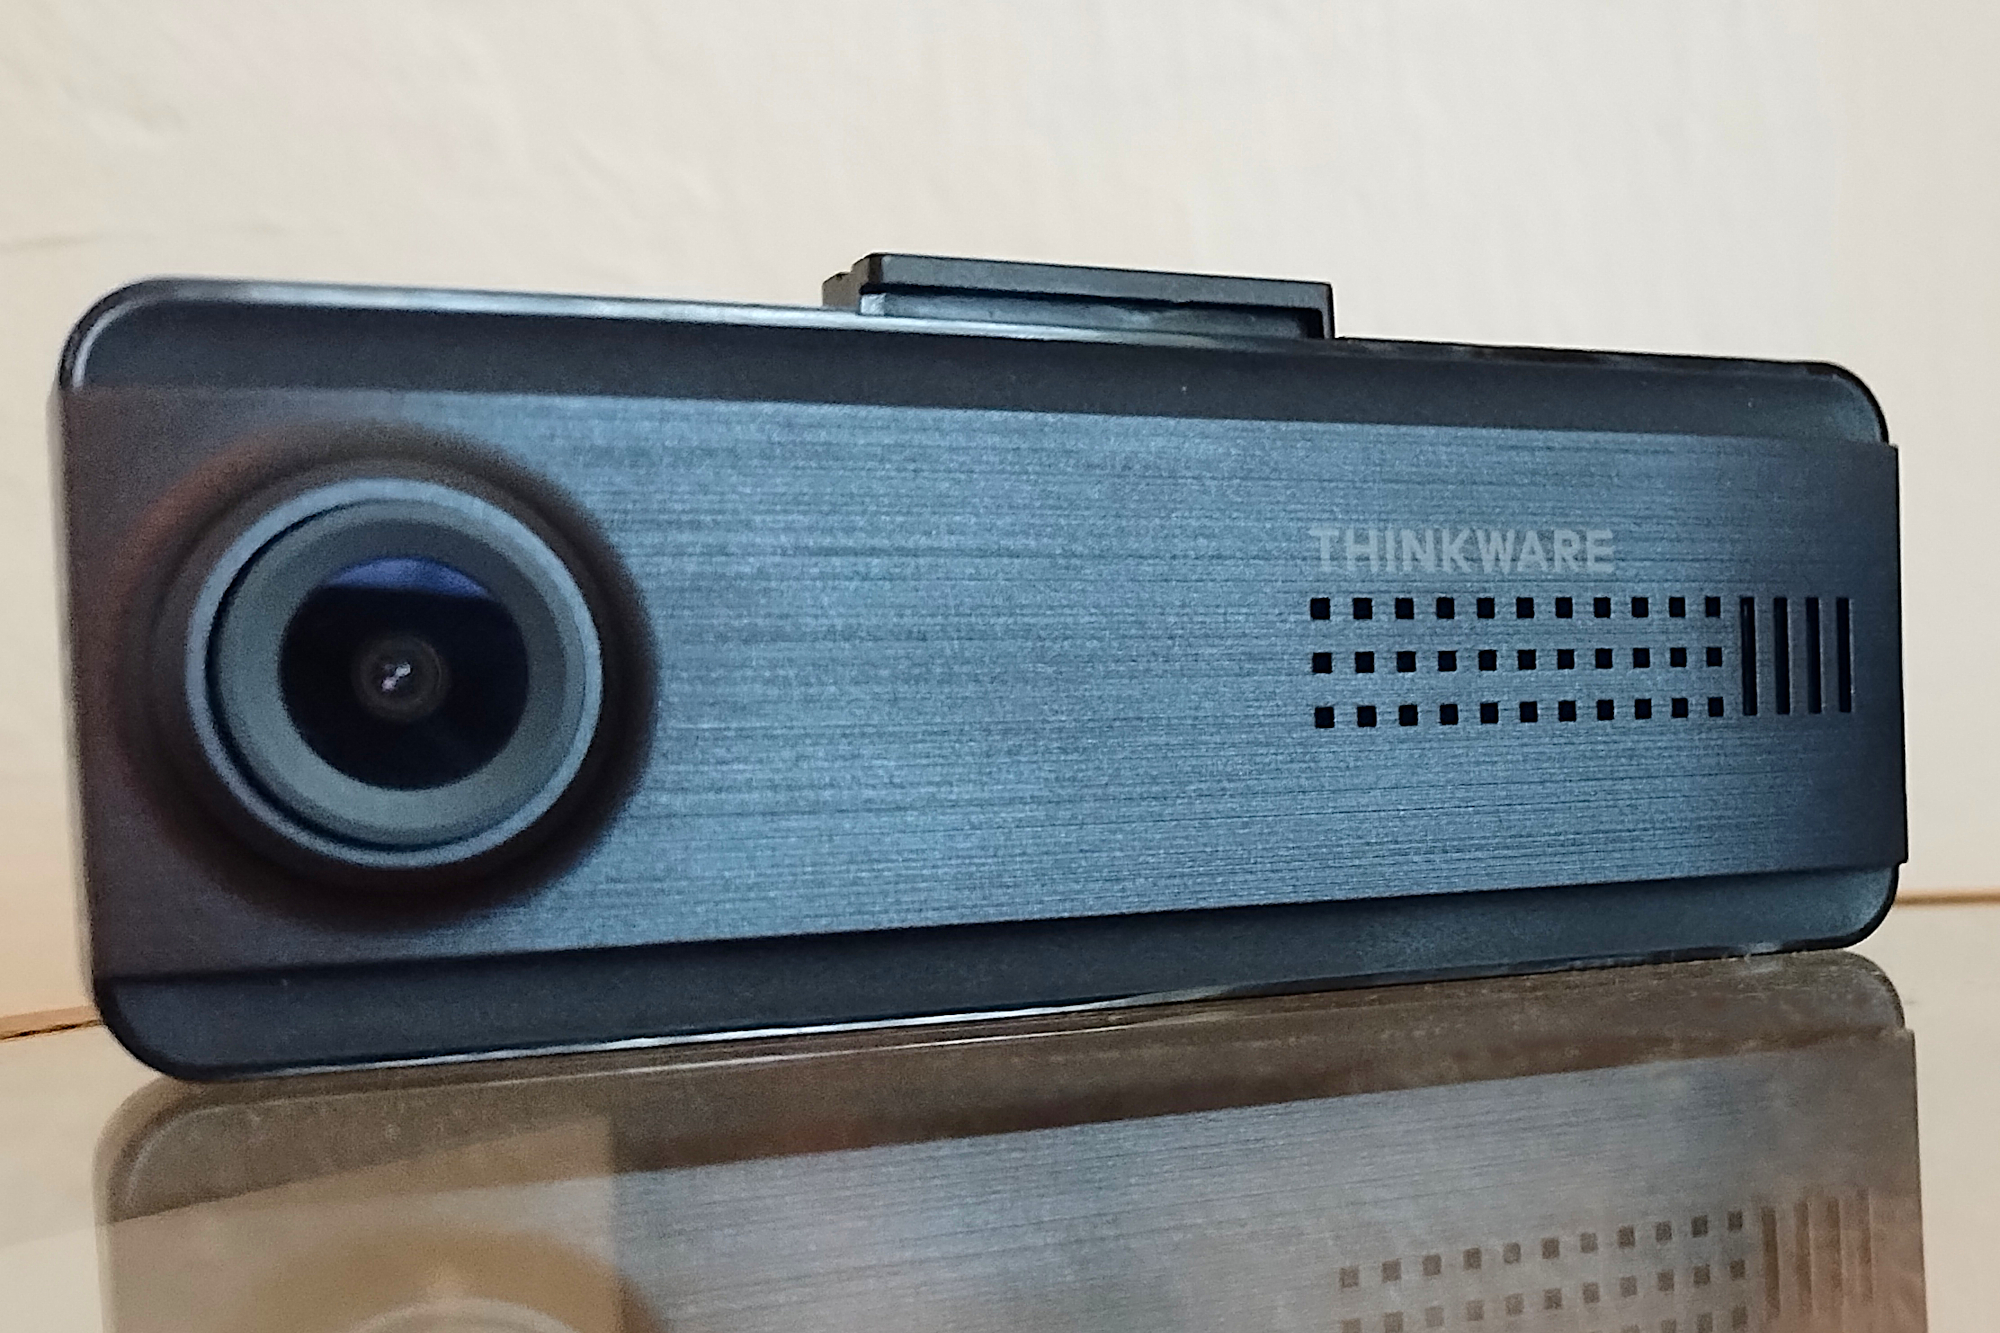 Thinkware Q200 dash cam